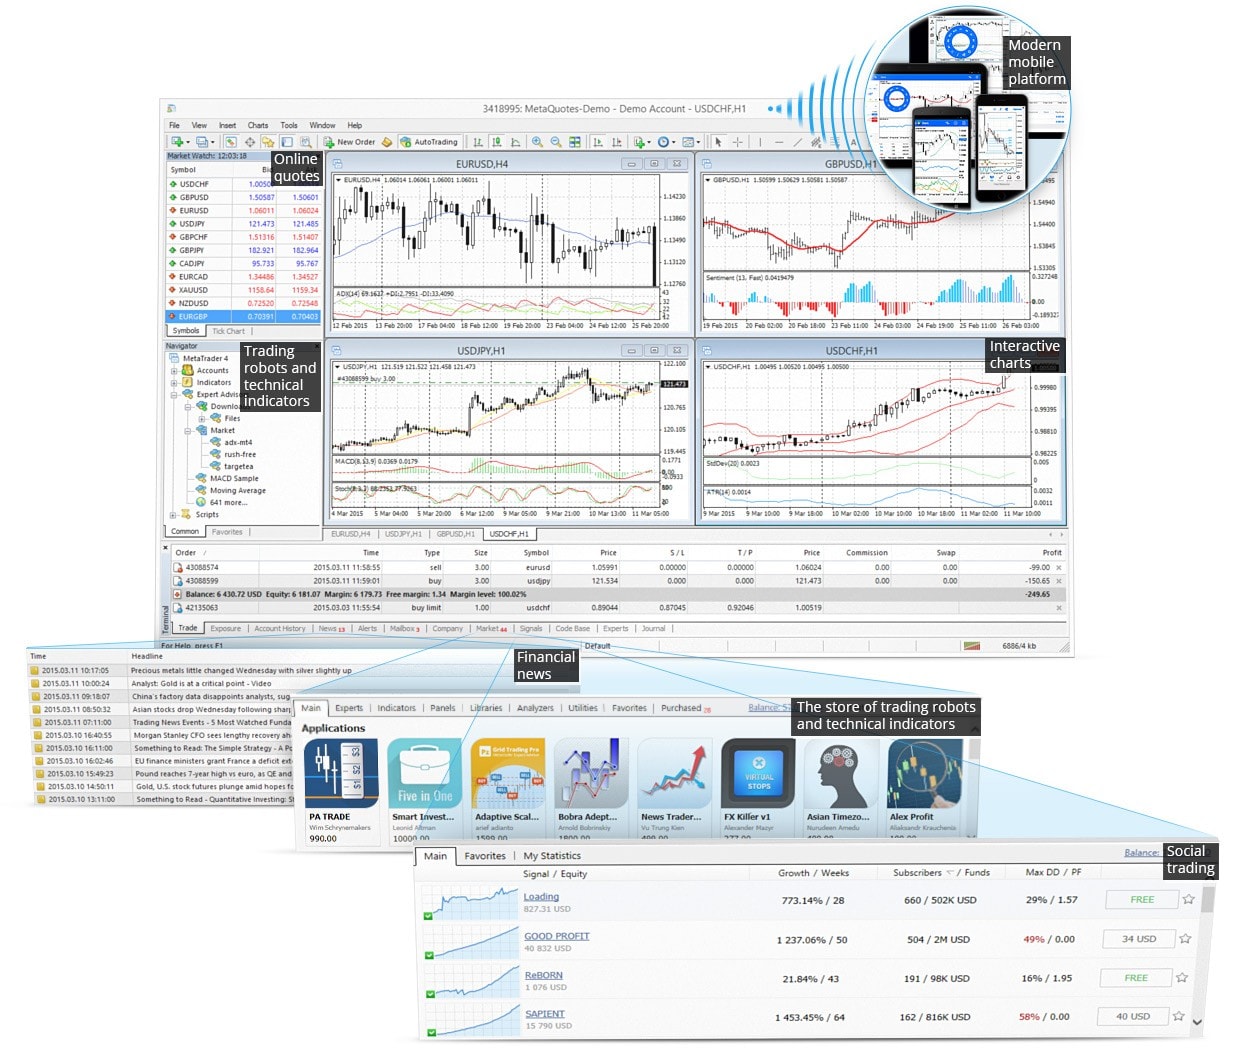 Plataforma universal MetaTrader 4: robots comerciales, indicadores técnicos, gráficos interactivos, trading social, tienda de robots y noticias financieras